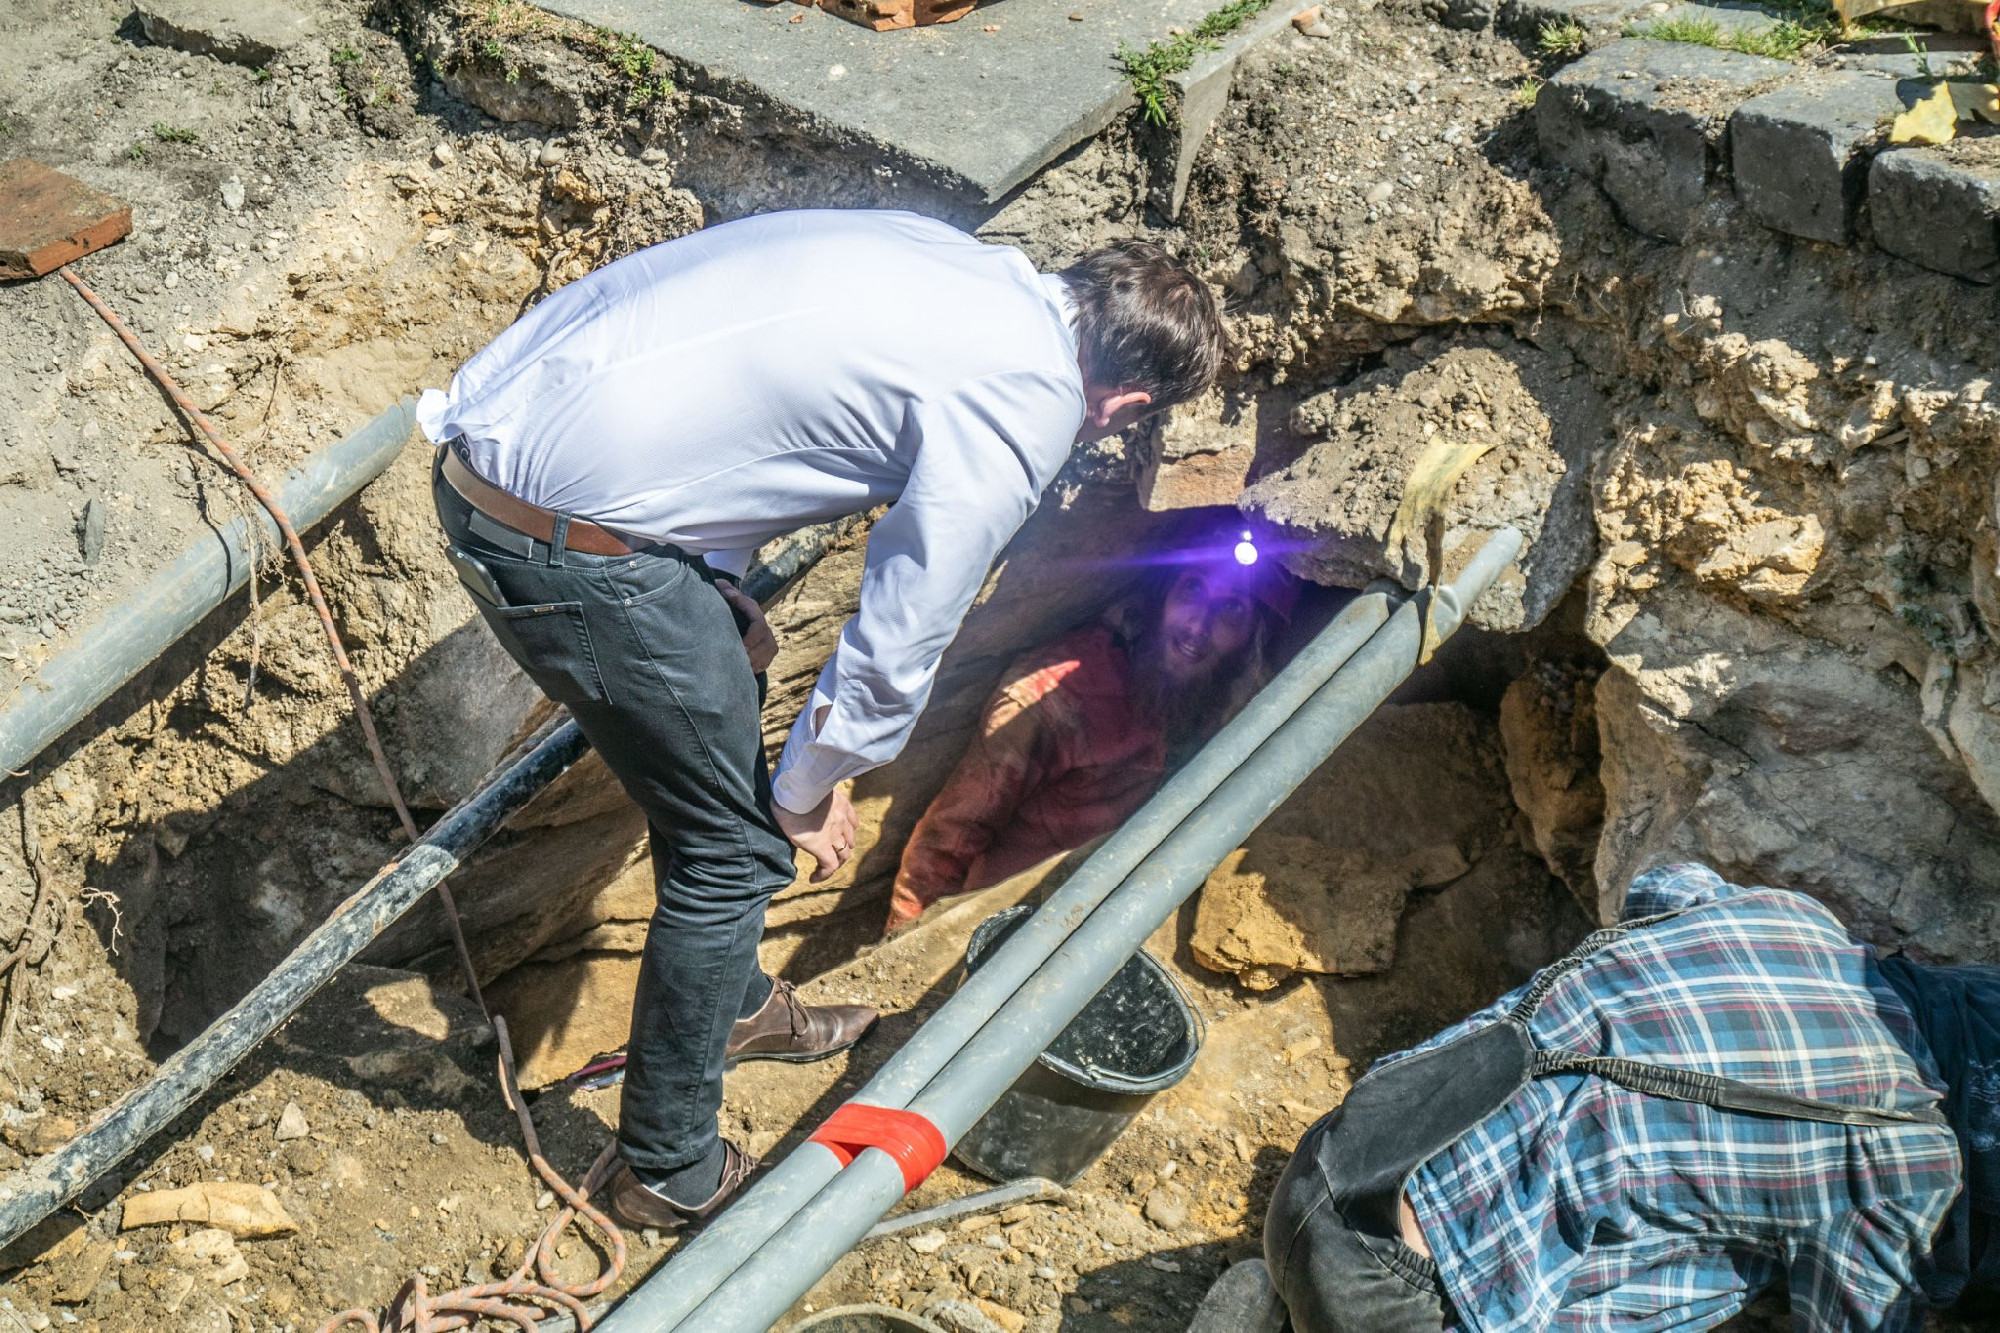 Járdajavítás közben barlangot találtak a II. kerületben